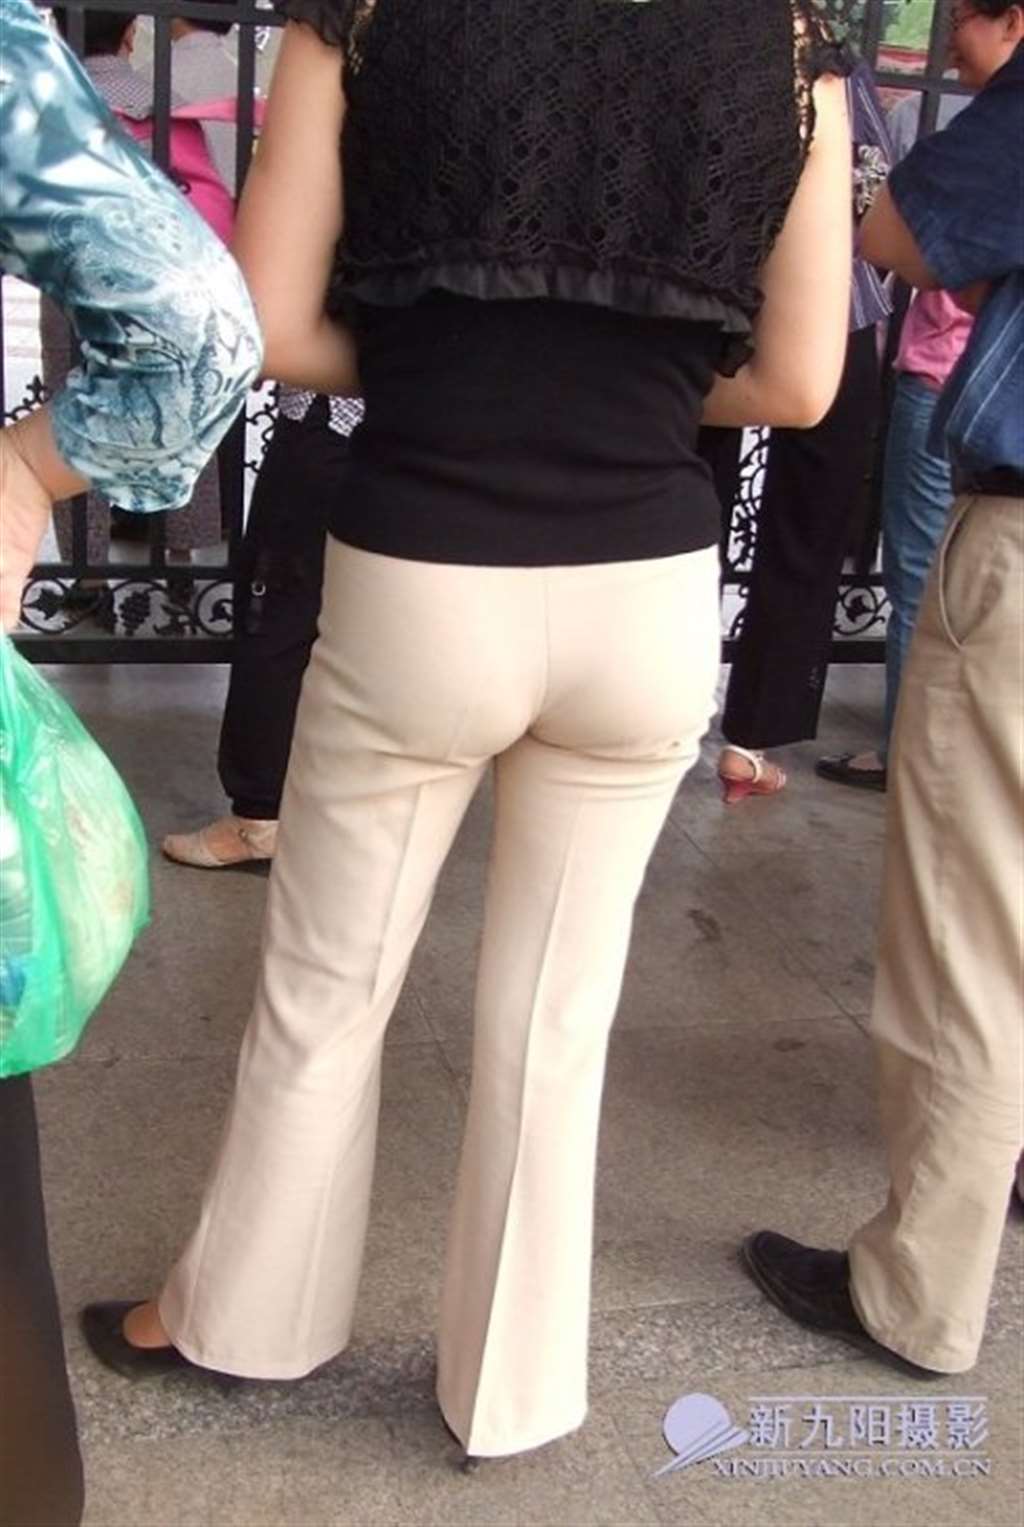 日本熟妇肥臀图片, 薄裤容易显内痕!